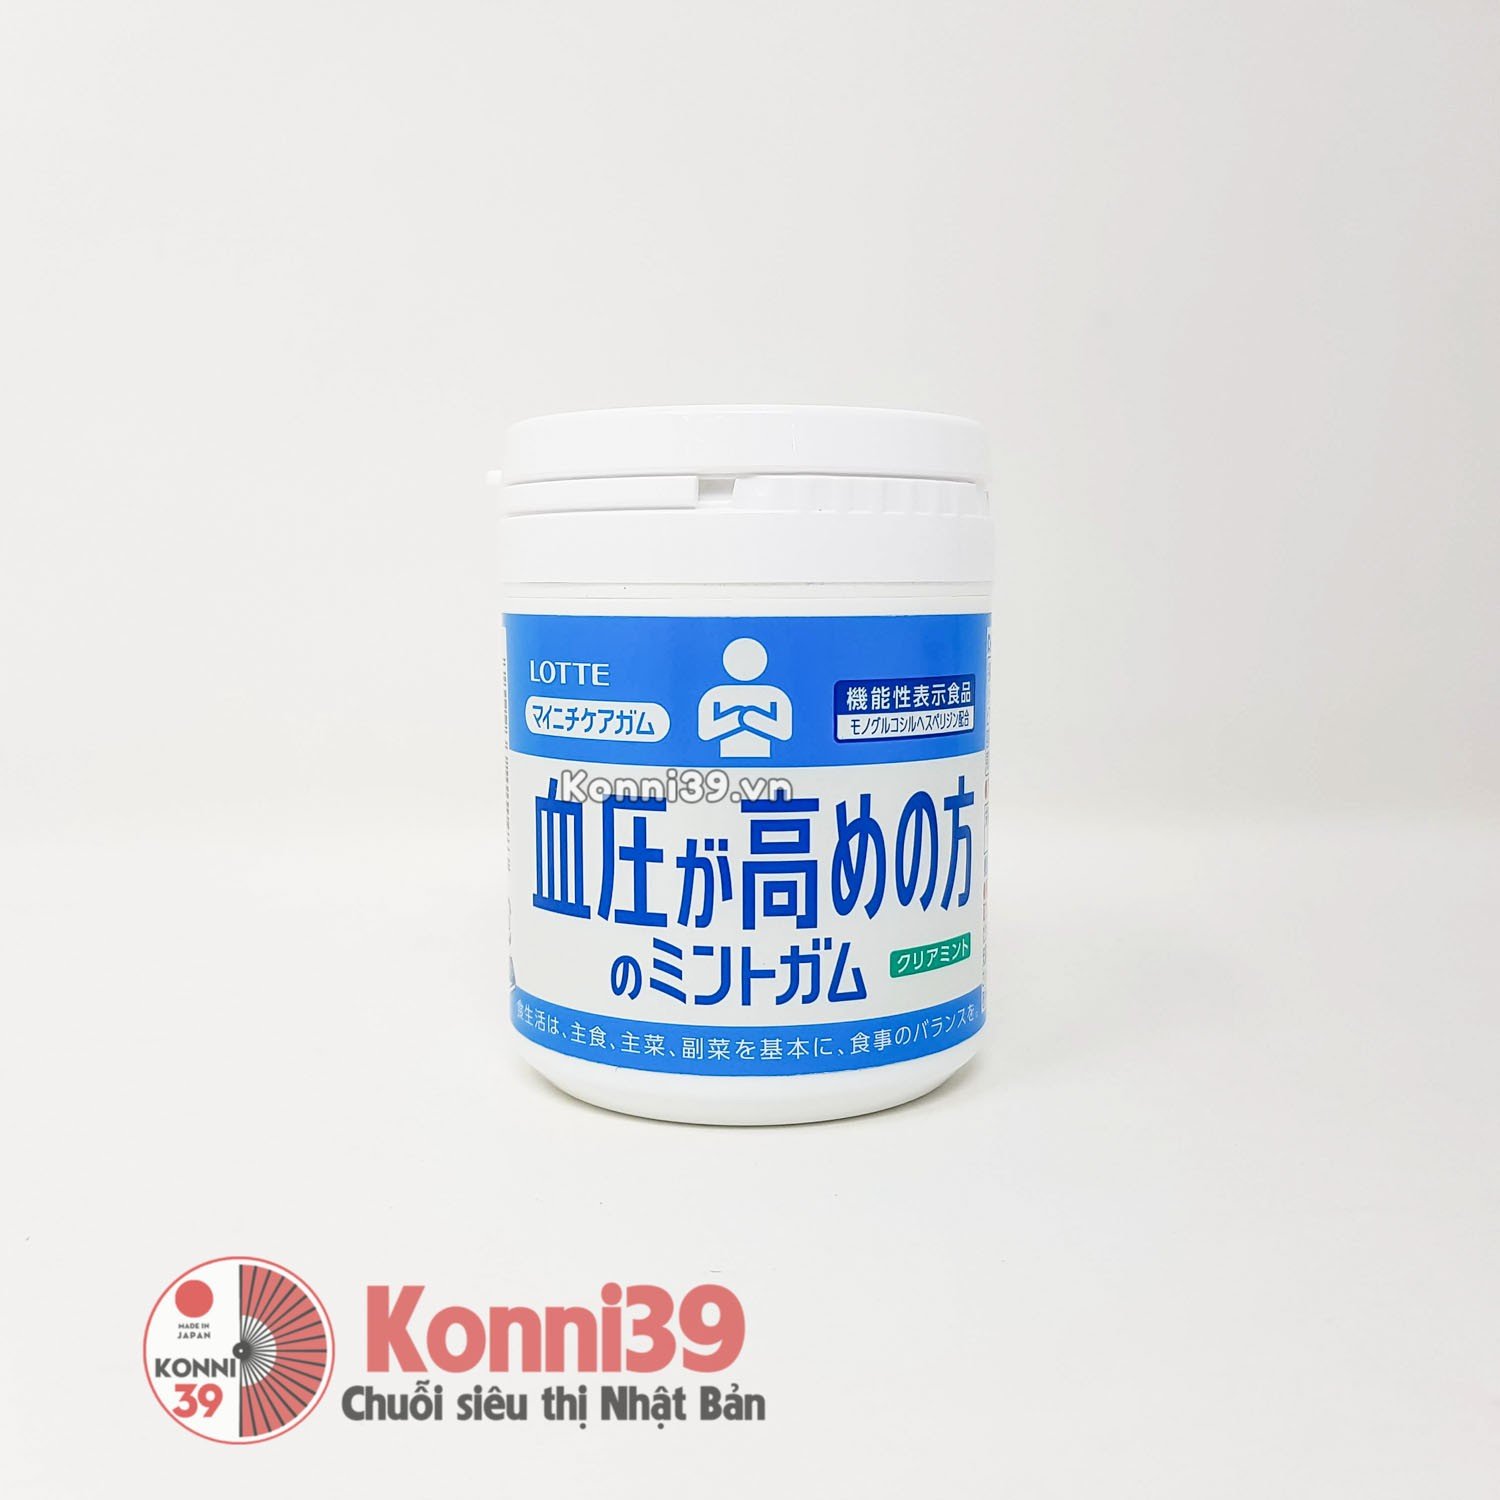 Kẹo cao su Lotte Mynichi Care bạc hà 143g - Dành cho người huyết áp cao